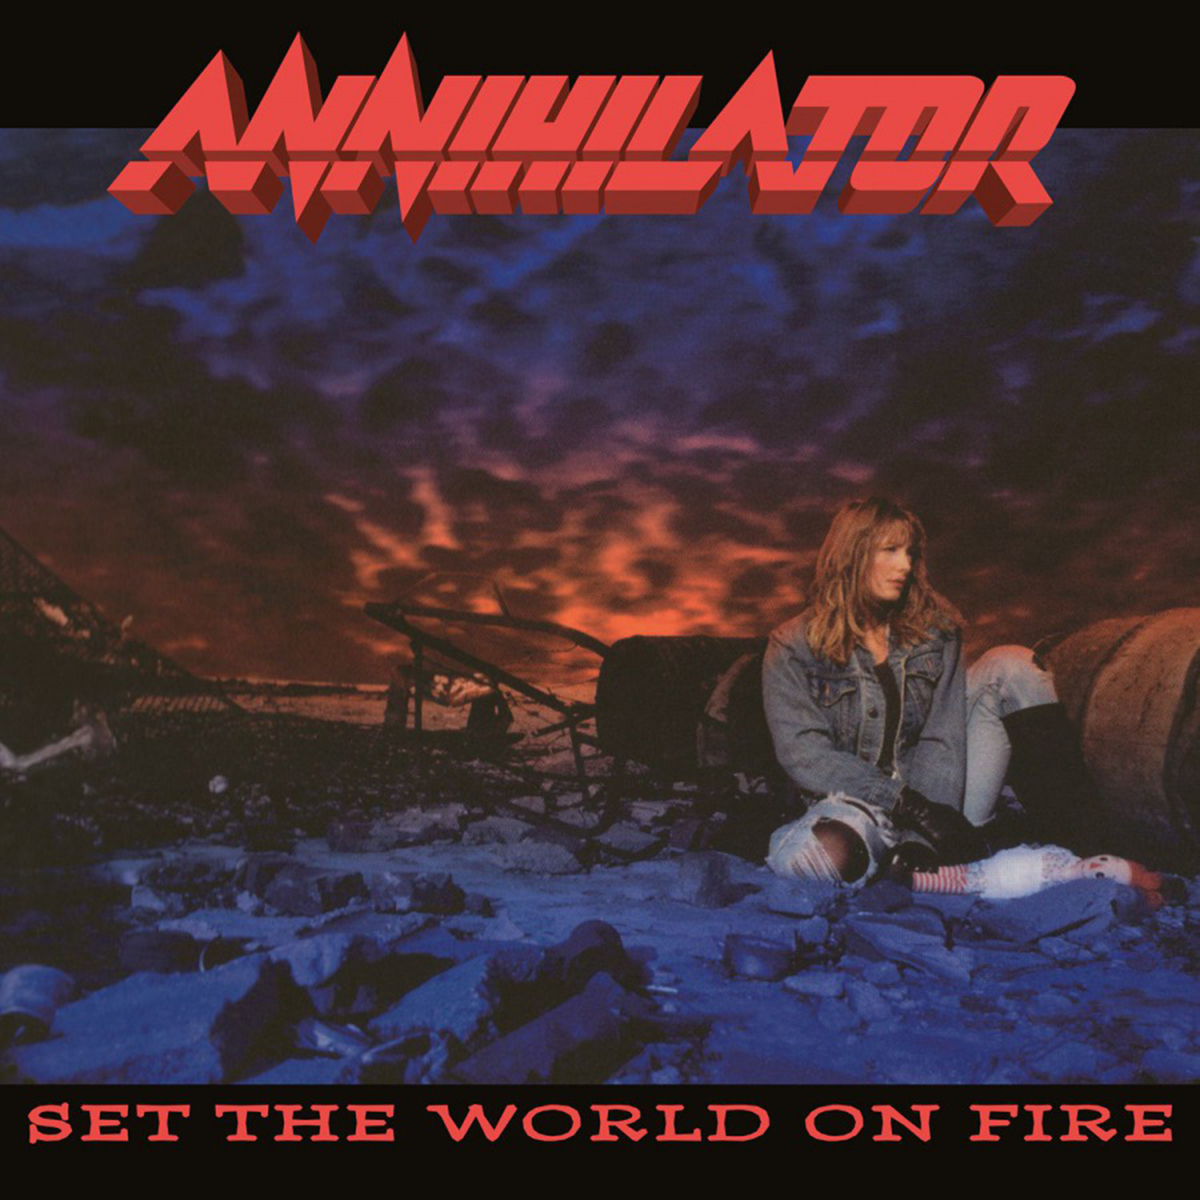 цена Виниловая пластинка Annihilator, Set The World On Fire (8719262028272)